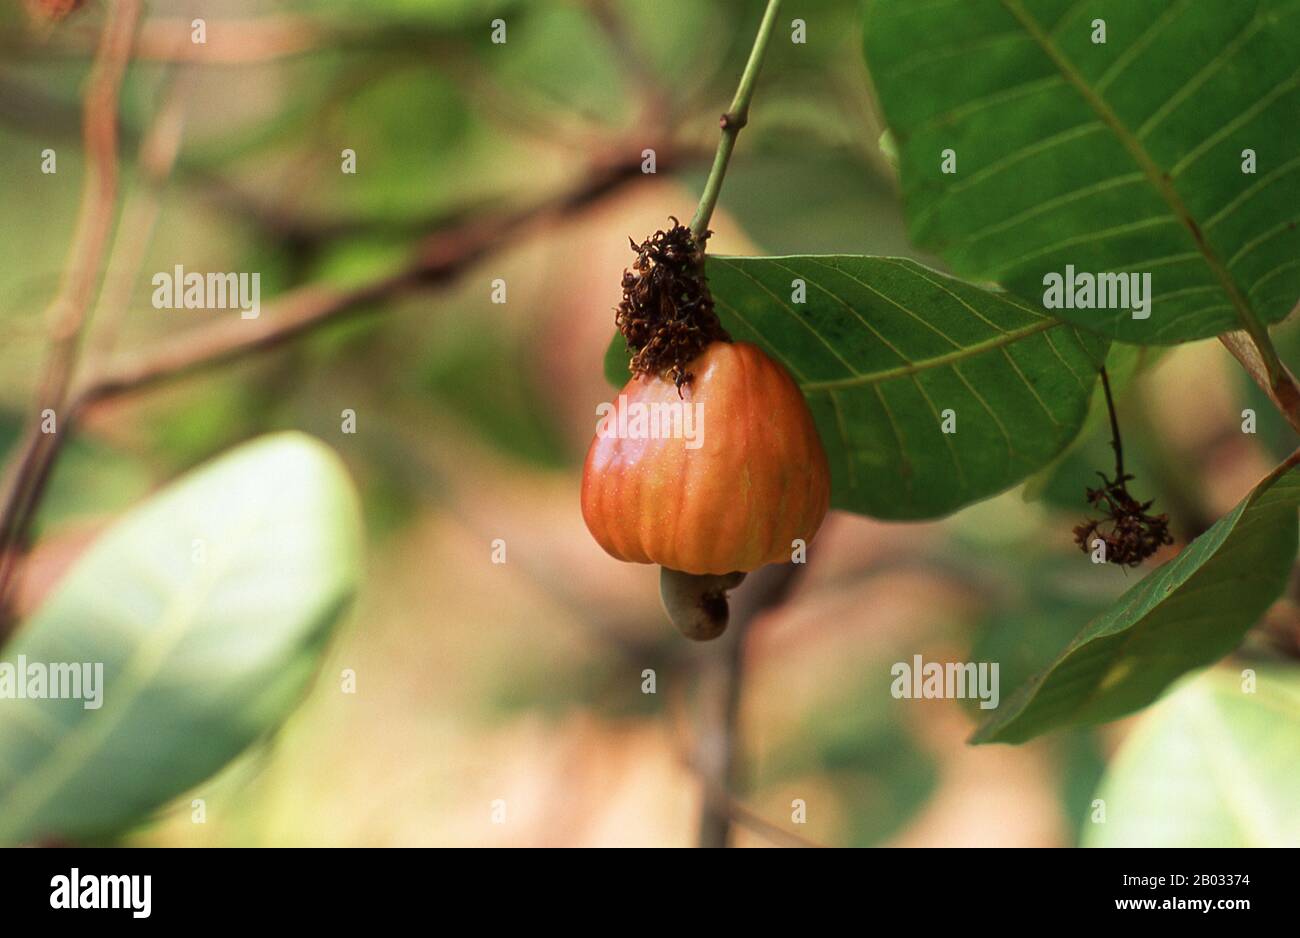 El anacardo (Anacardium occidentale) es un árbol perenne tropical que produce la semilla de anacardo y la manzana de anacardo. Puede crecer hasta 14 metros (46 pies), pero el anacardo, que crece hasta 6 metros (20 pies), ha demostrado ser más rentable, con una madurez más temprana y rendimientos más altos. La semilla de anacardo se sirve como un bocadillo o se utiliza en recetas, como las nueces. La manzana de anacardo es una fruta de color rojizo a amarillo claro, cuya pulpa se puede procesar en una bebida de fruta dulce y astringente o destilar en licor. La cáscara de la semilla de anacardo produce derivados que pueden ser utilizados en muchas aplicaciones de lubrica Foto de stock